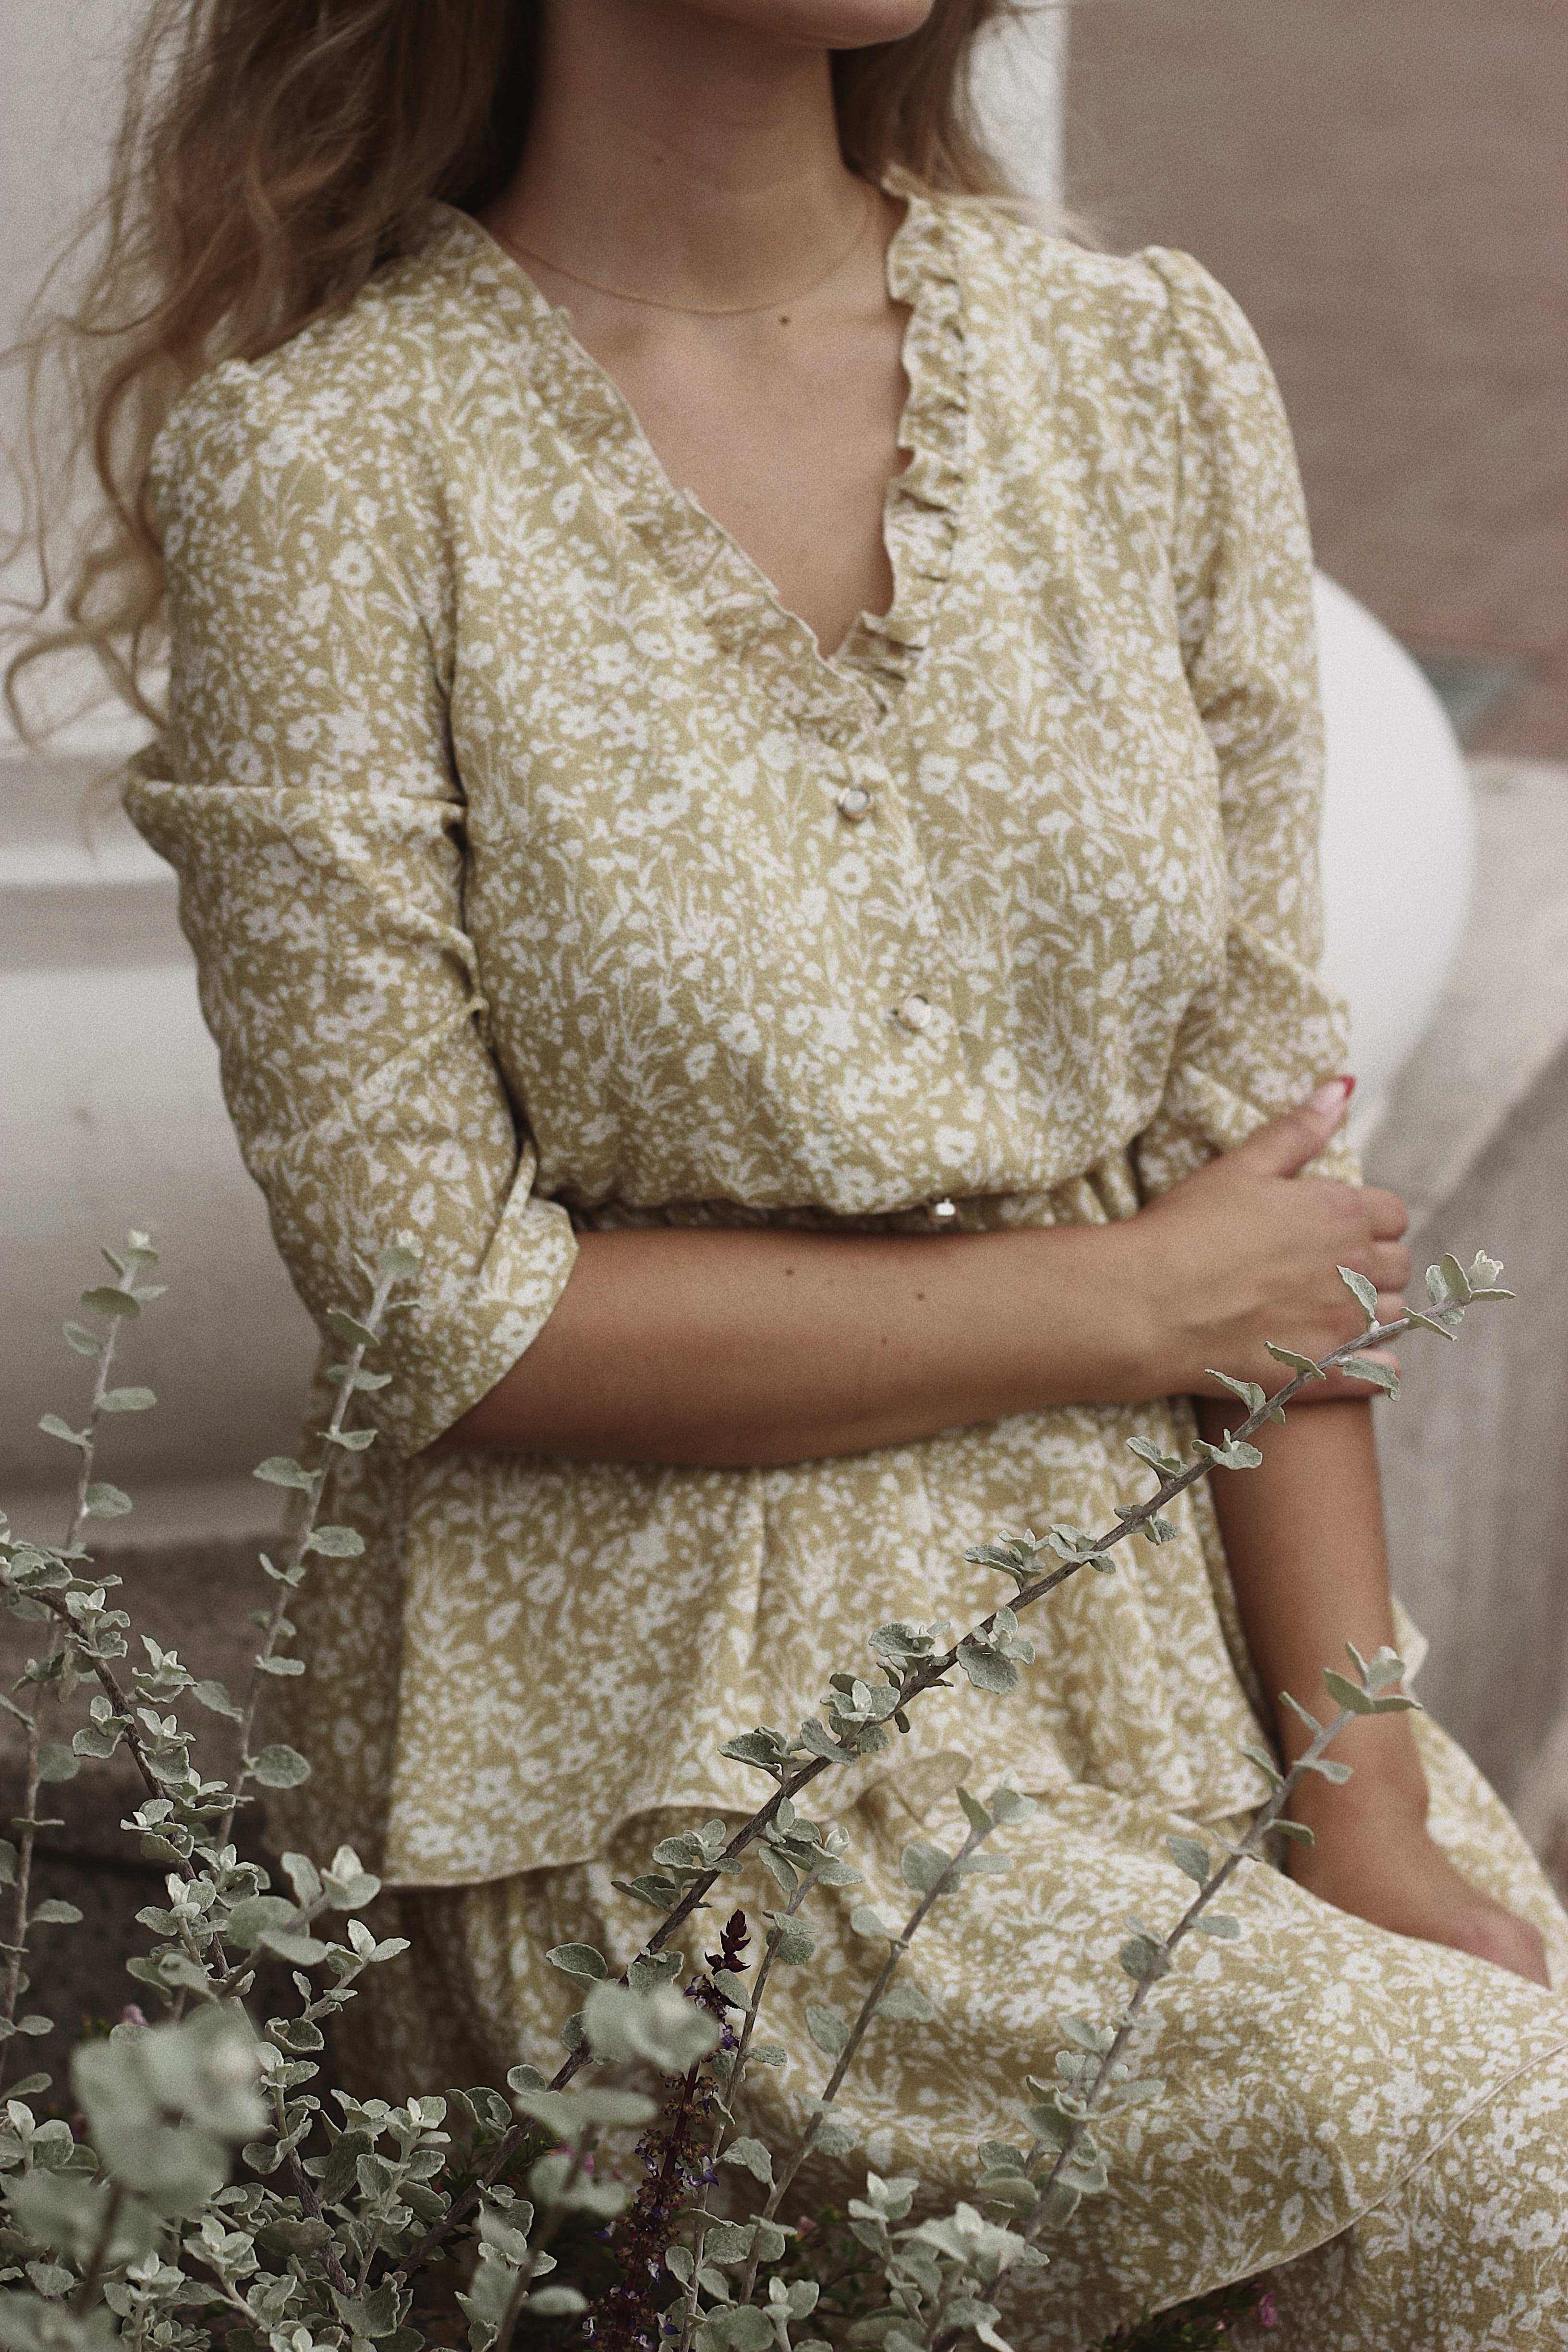 فستان مطبع بصيحة الكشكش يناسب إطلالتك النهارية- مصدر الصور موقع بيكسيلز